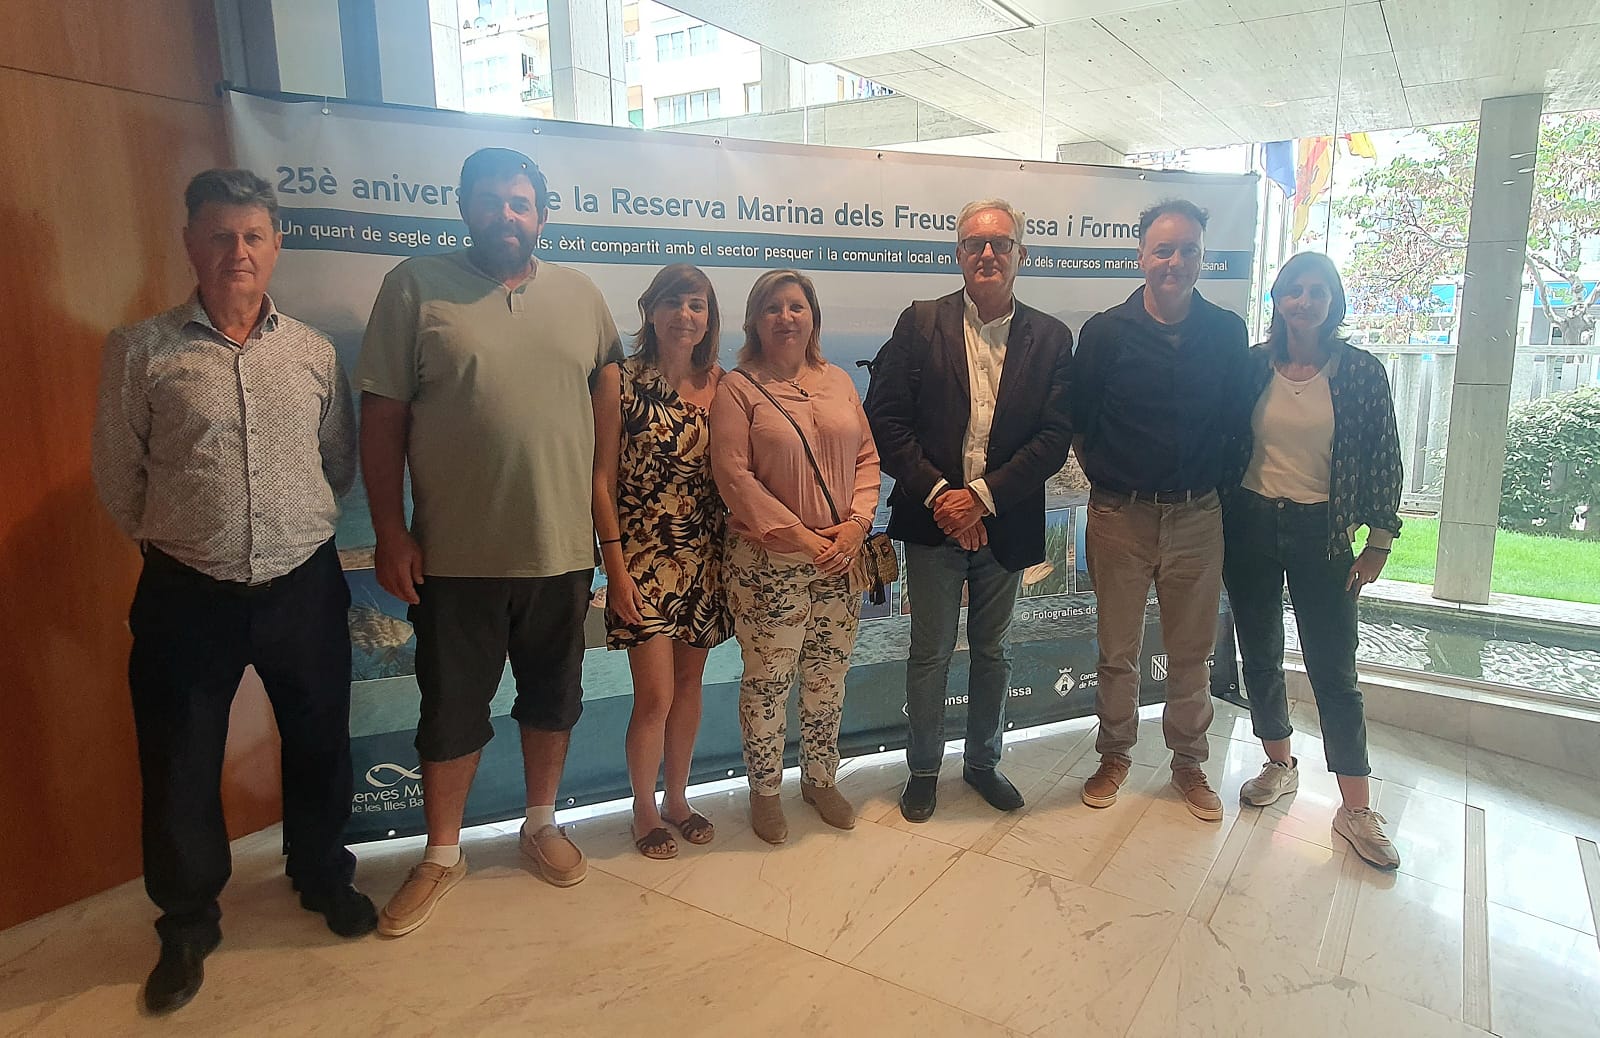 La Reserva Marina dels Freus d'Eivissa i Formentera celebra el seu 25 aniversari